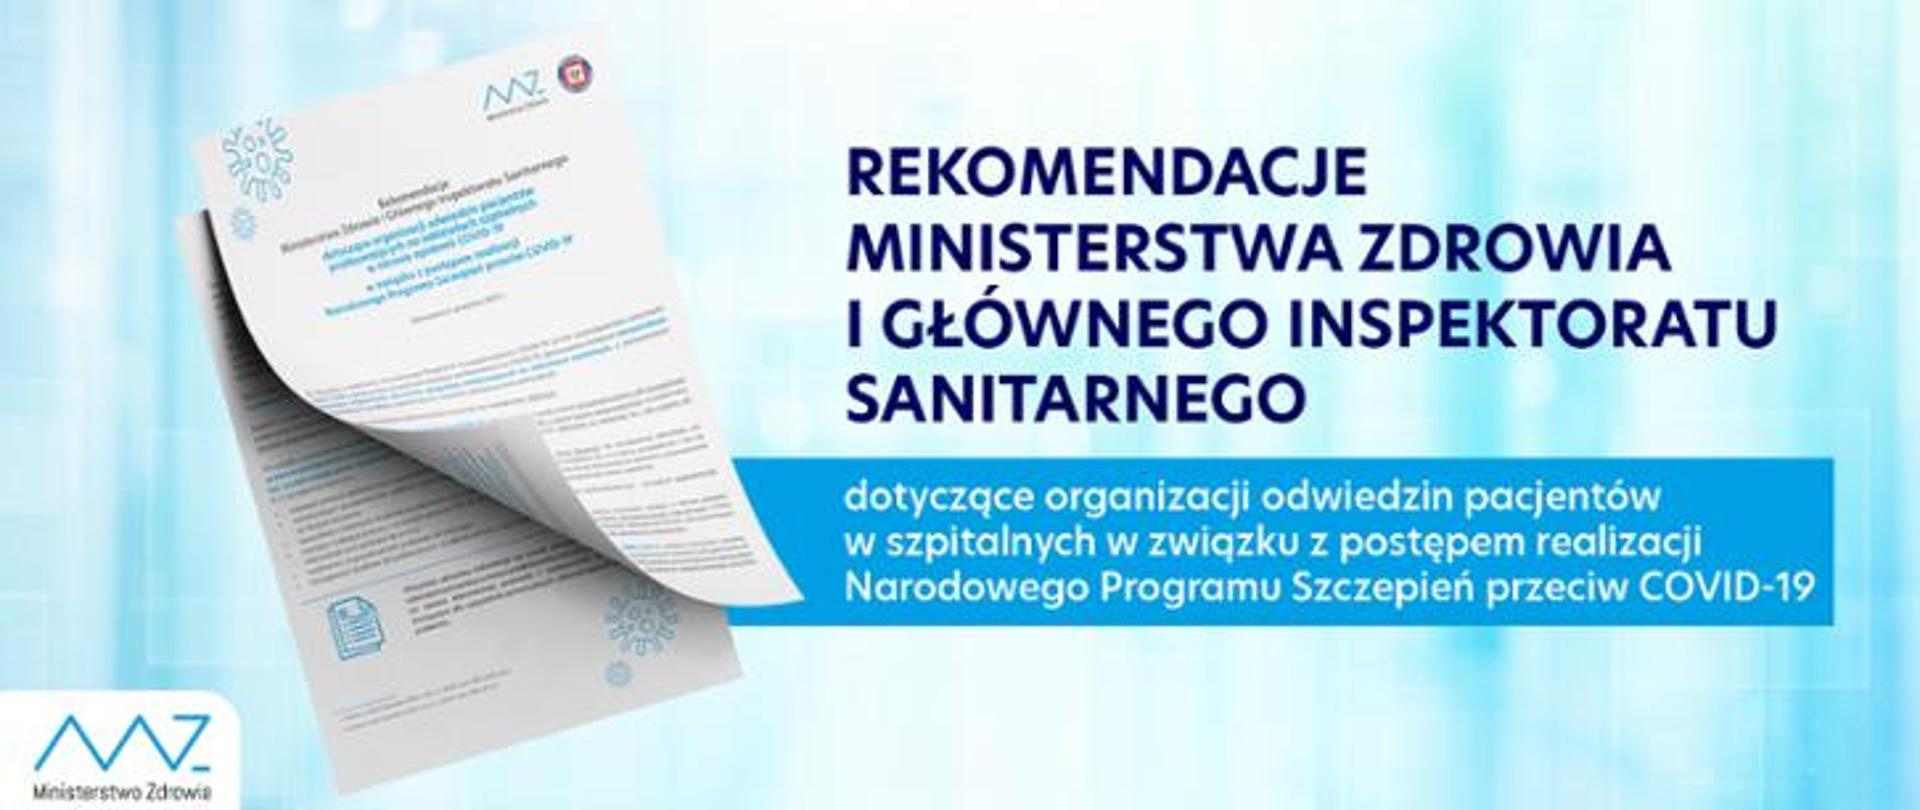 Baner z błękitnym tłem, zdjęciem broszury oraz tekst:
Rekomendacje Ministerstwa Zdrowia i Głównego Inspektoratu Sanitarnego dotyczące organizacji odwiedzin pacjentów w szpitalach w związku z postępem realizacji Narodowego Programu Szczepień przecie Covid-19